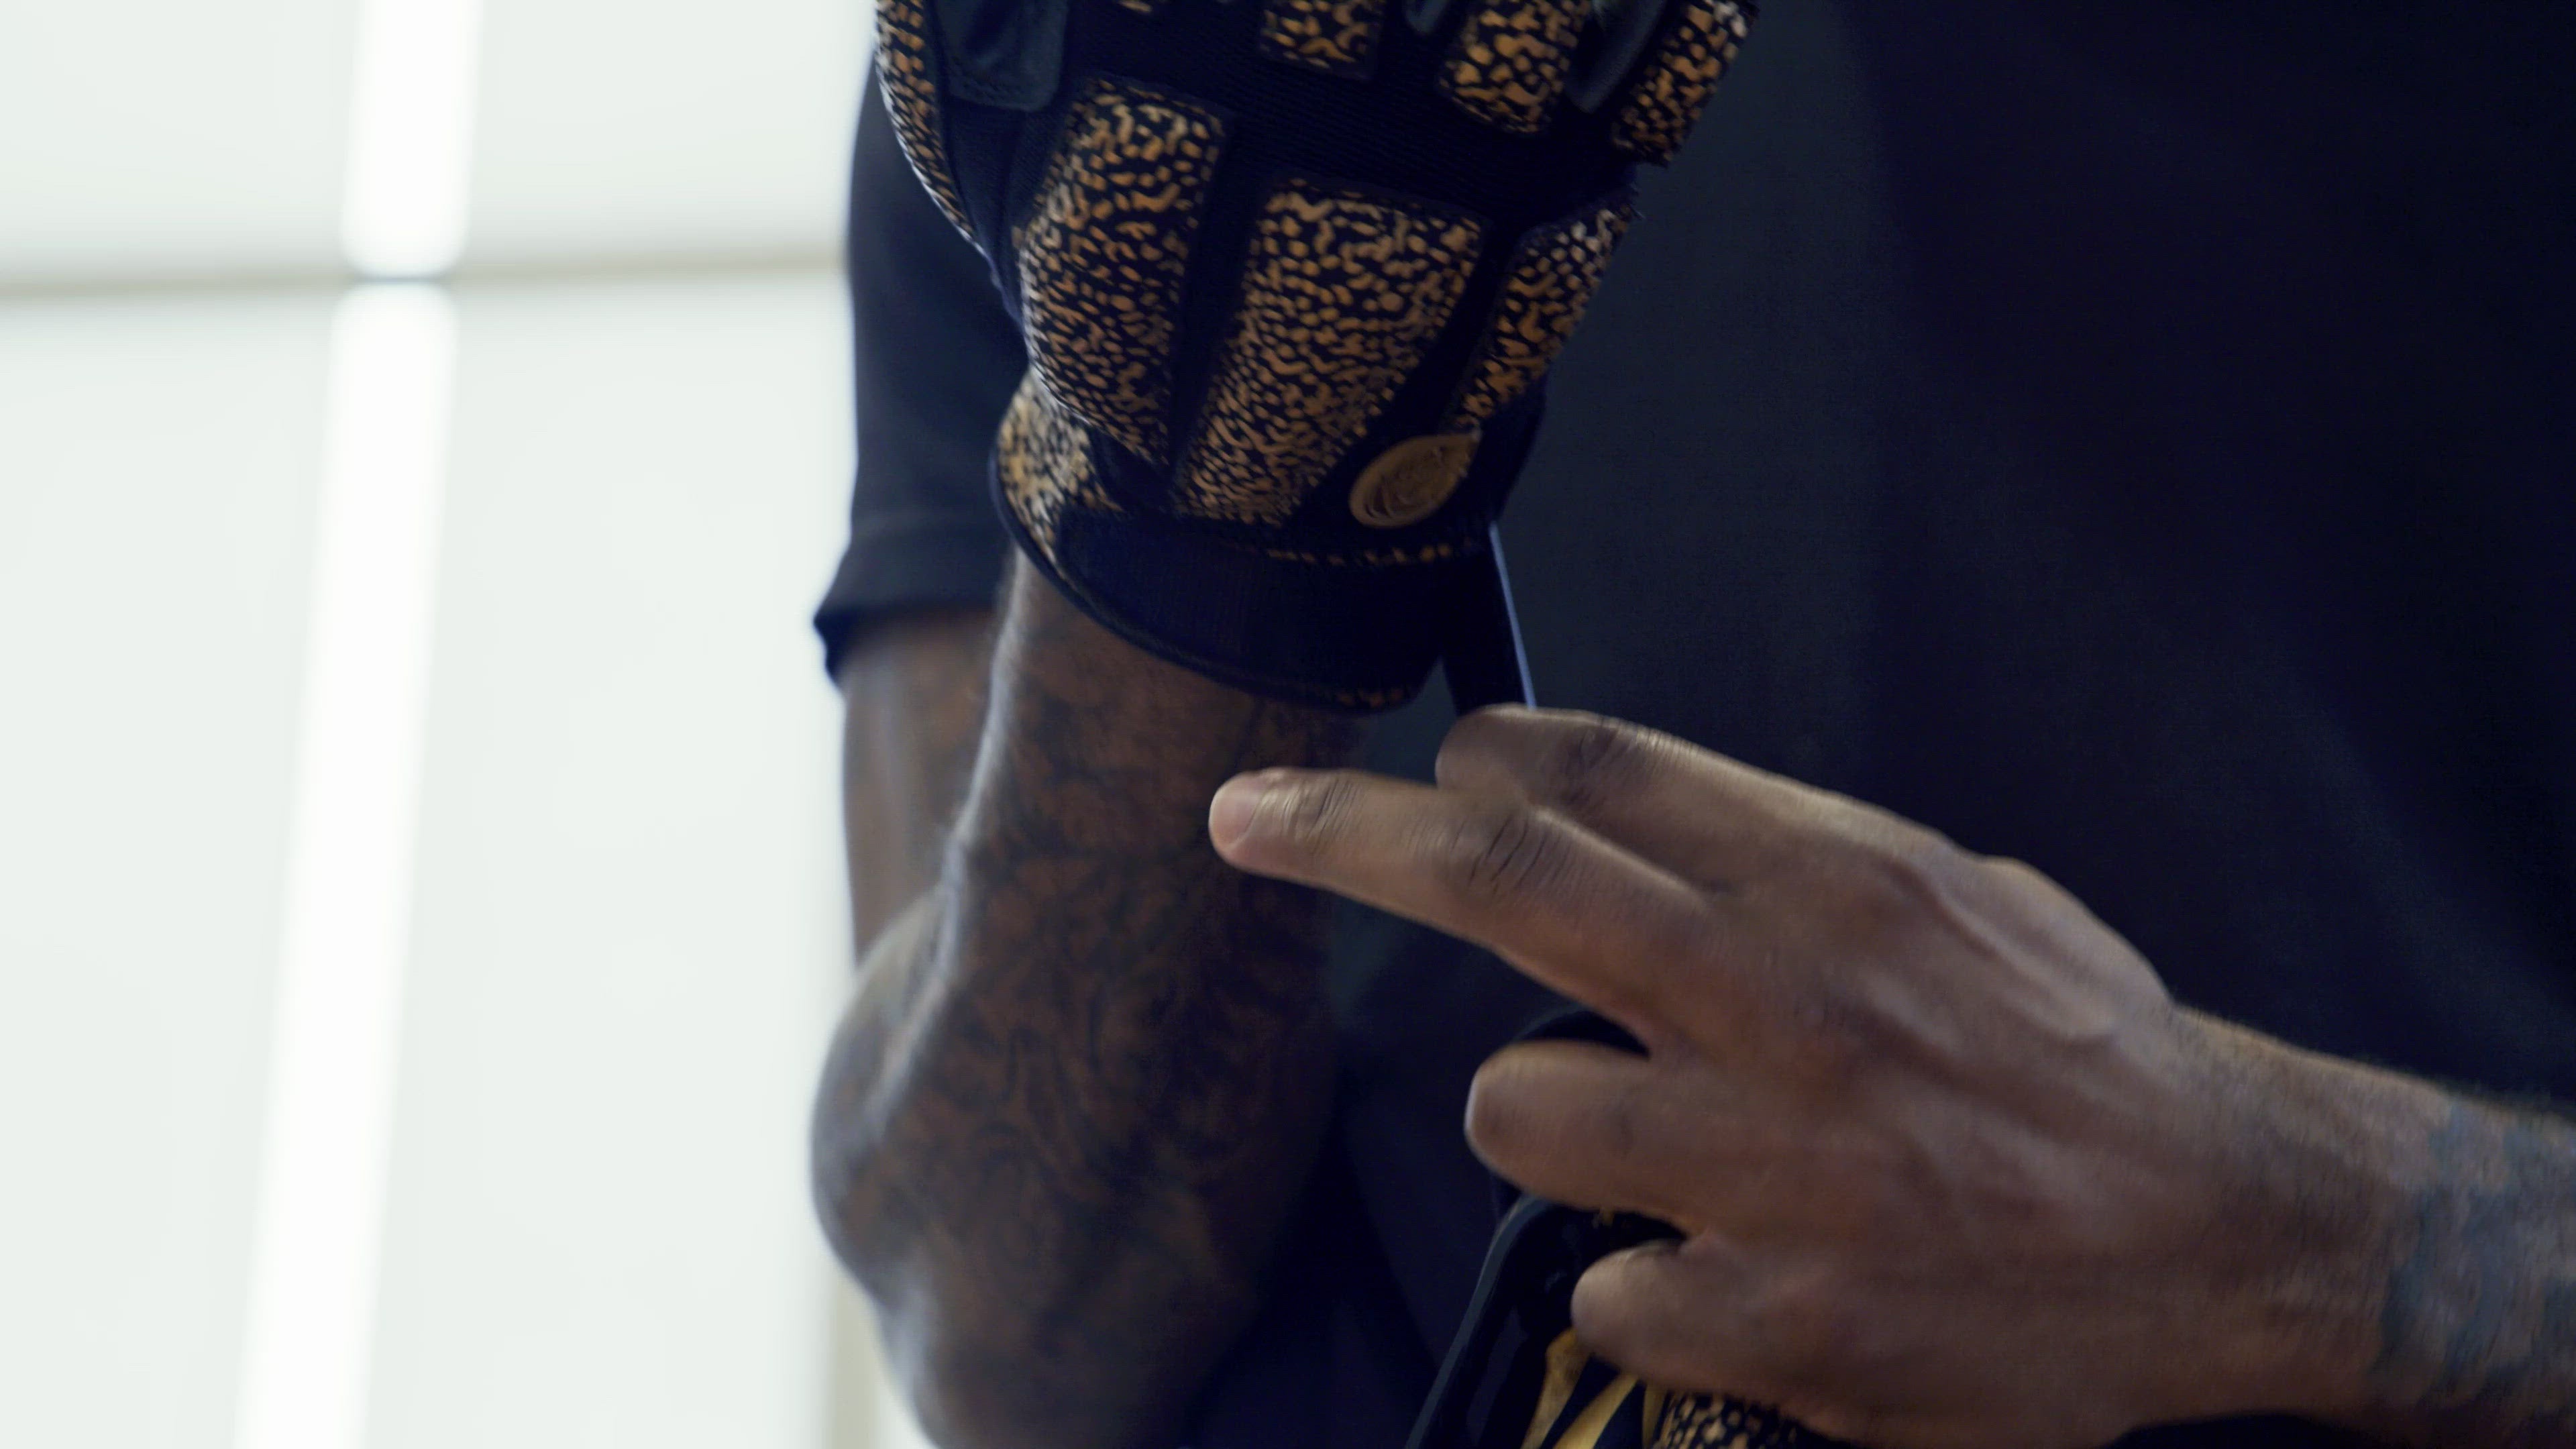 POWERHANDZ Basketball Anti-Grip Weighted Gloves